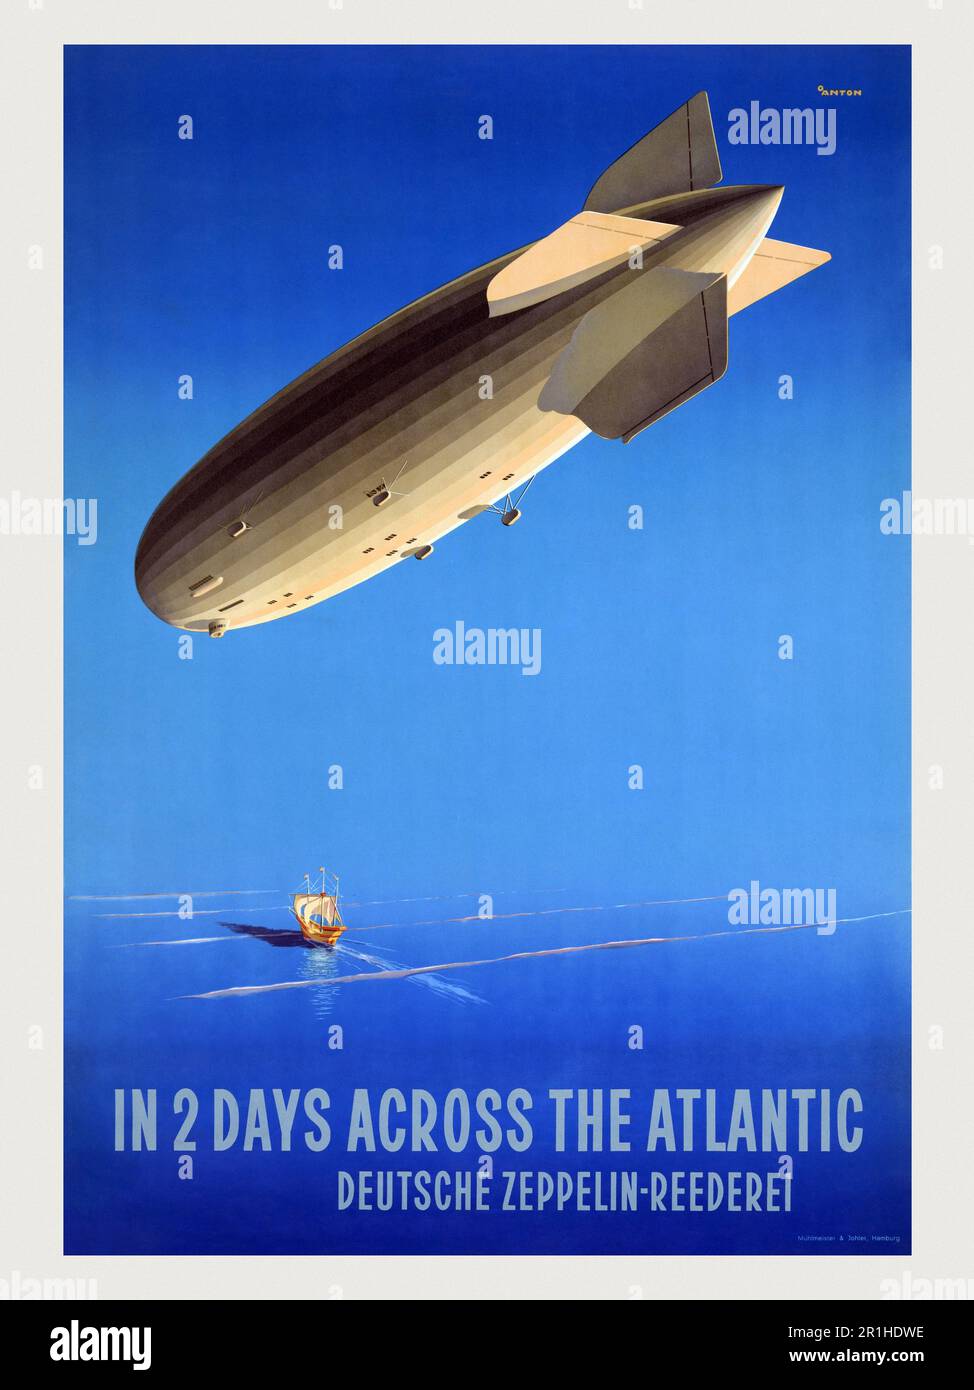 In zwei Tagen überqueren wir den Atlantik. Deutsche Zeppelin-Reederei von Ottomar Anton (1895-1976). Poster 1935 in Deutschland veröffentlicht. Hakenkreuze an den vertikalen Stabilisatoren wurden entfernt. Stockfoto